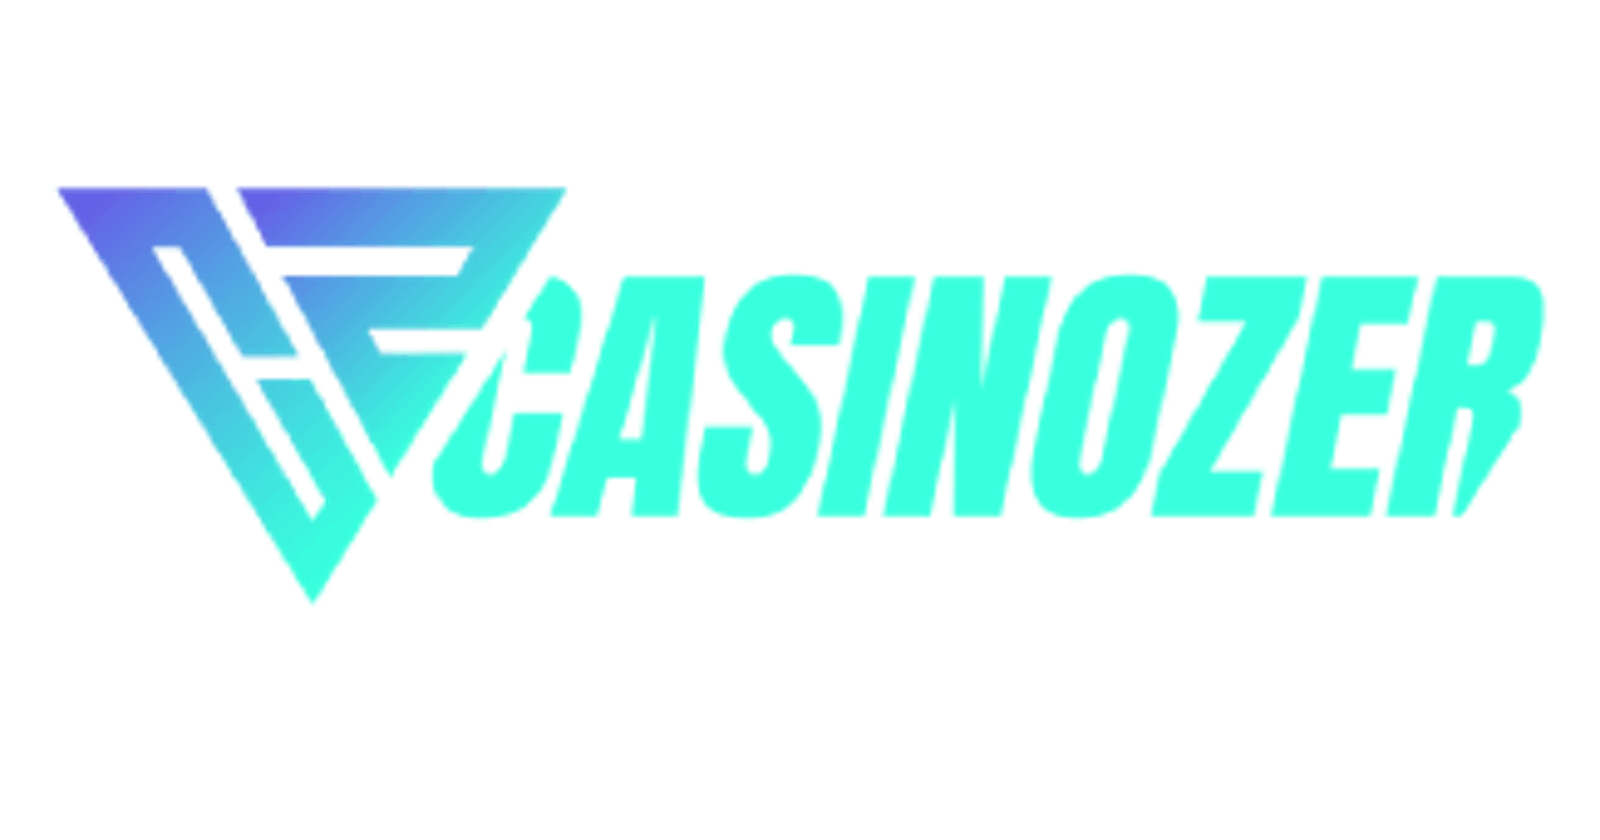 Quel Casinozer casino en ligne recommandez-vous ?